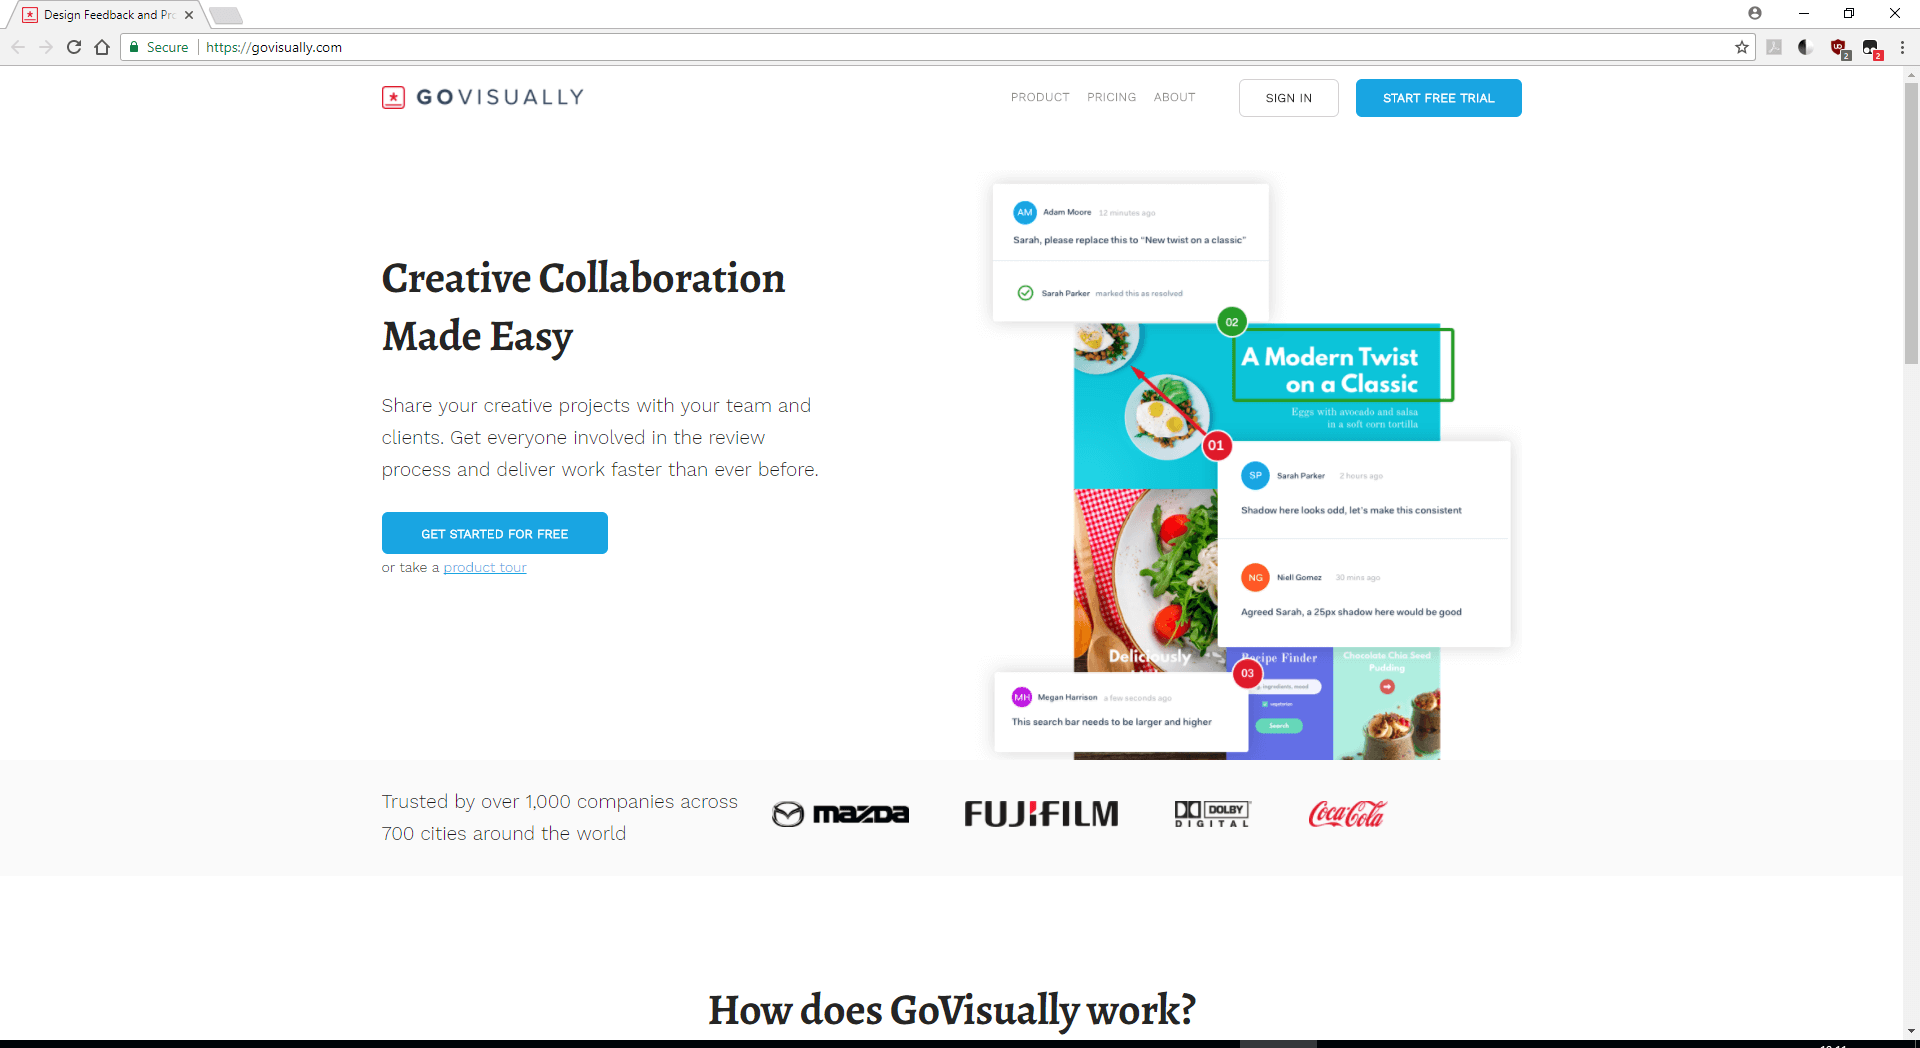 govisually.com